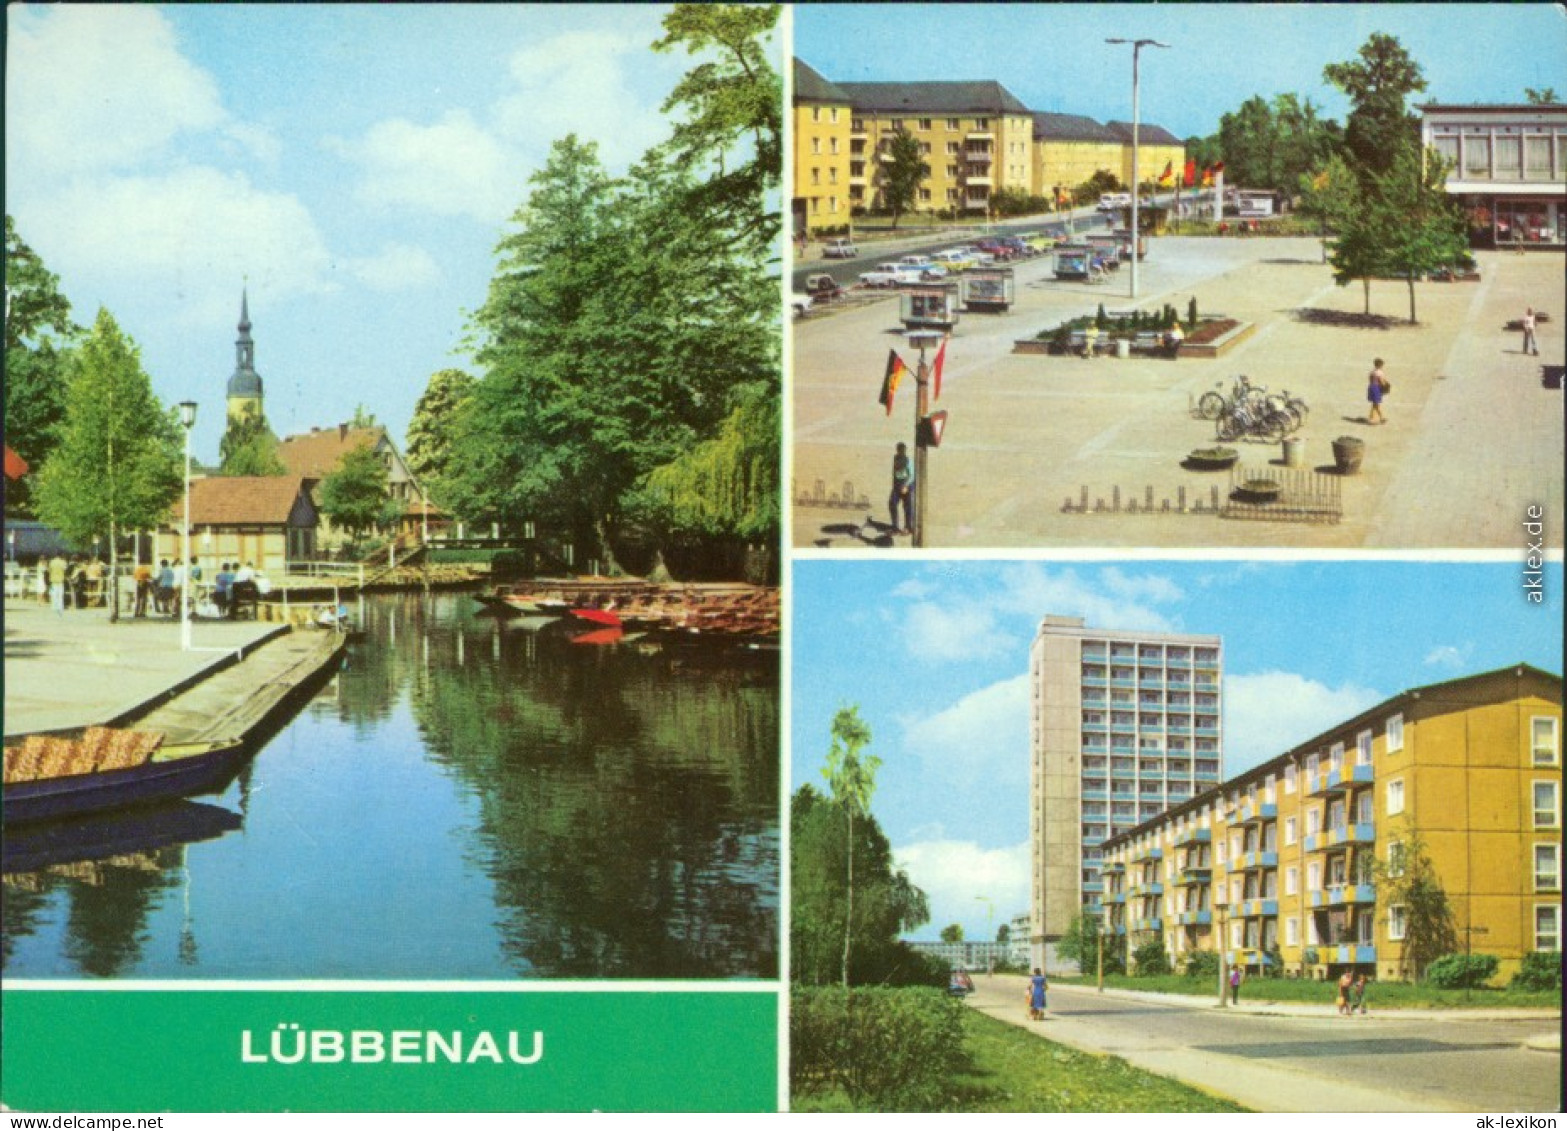 Lübbenau (Spreewald) Lubnjow 3 Bild - Straße Der Jugend - Roter Platz 1980 - Lübbenau